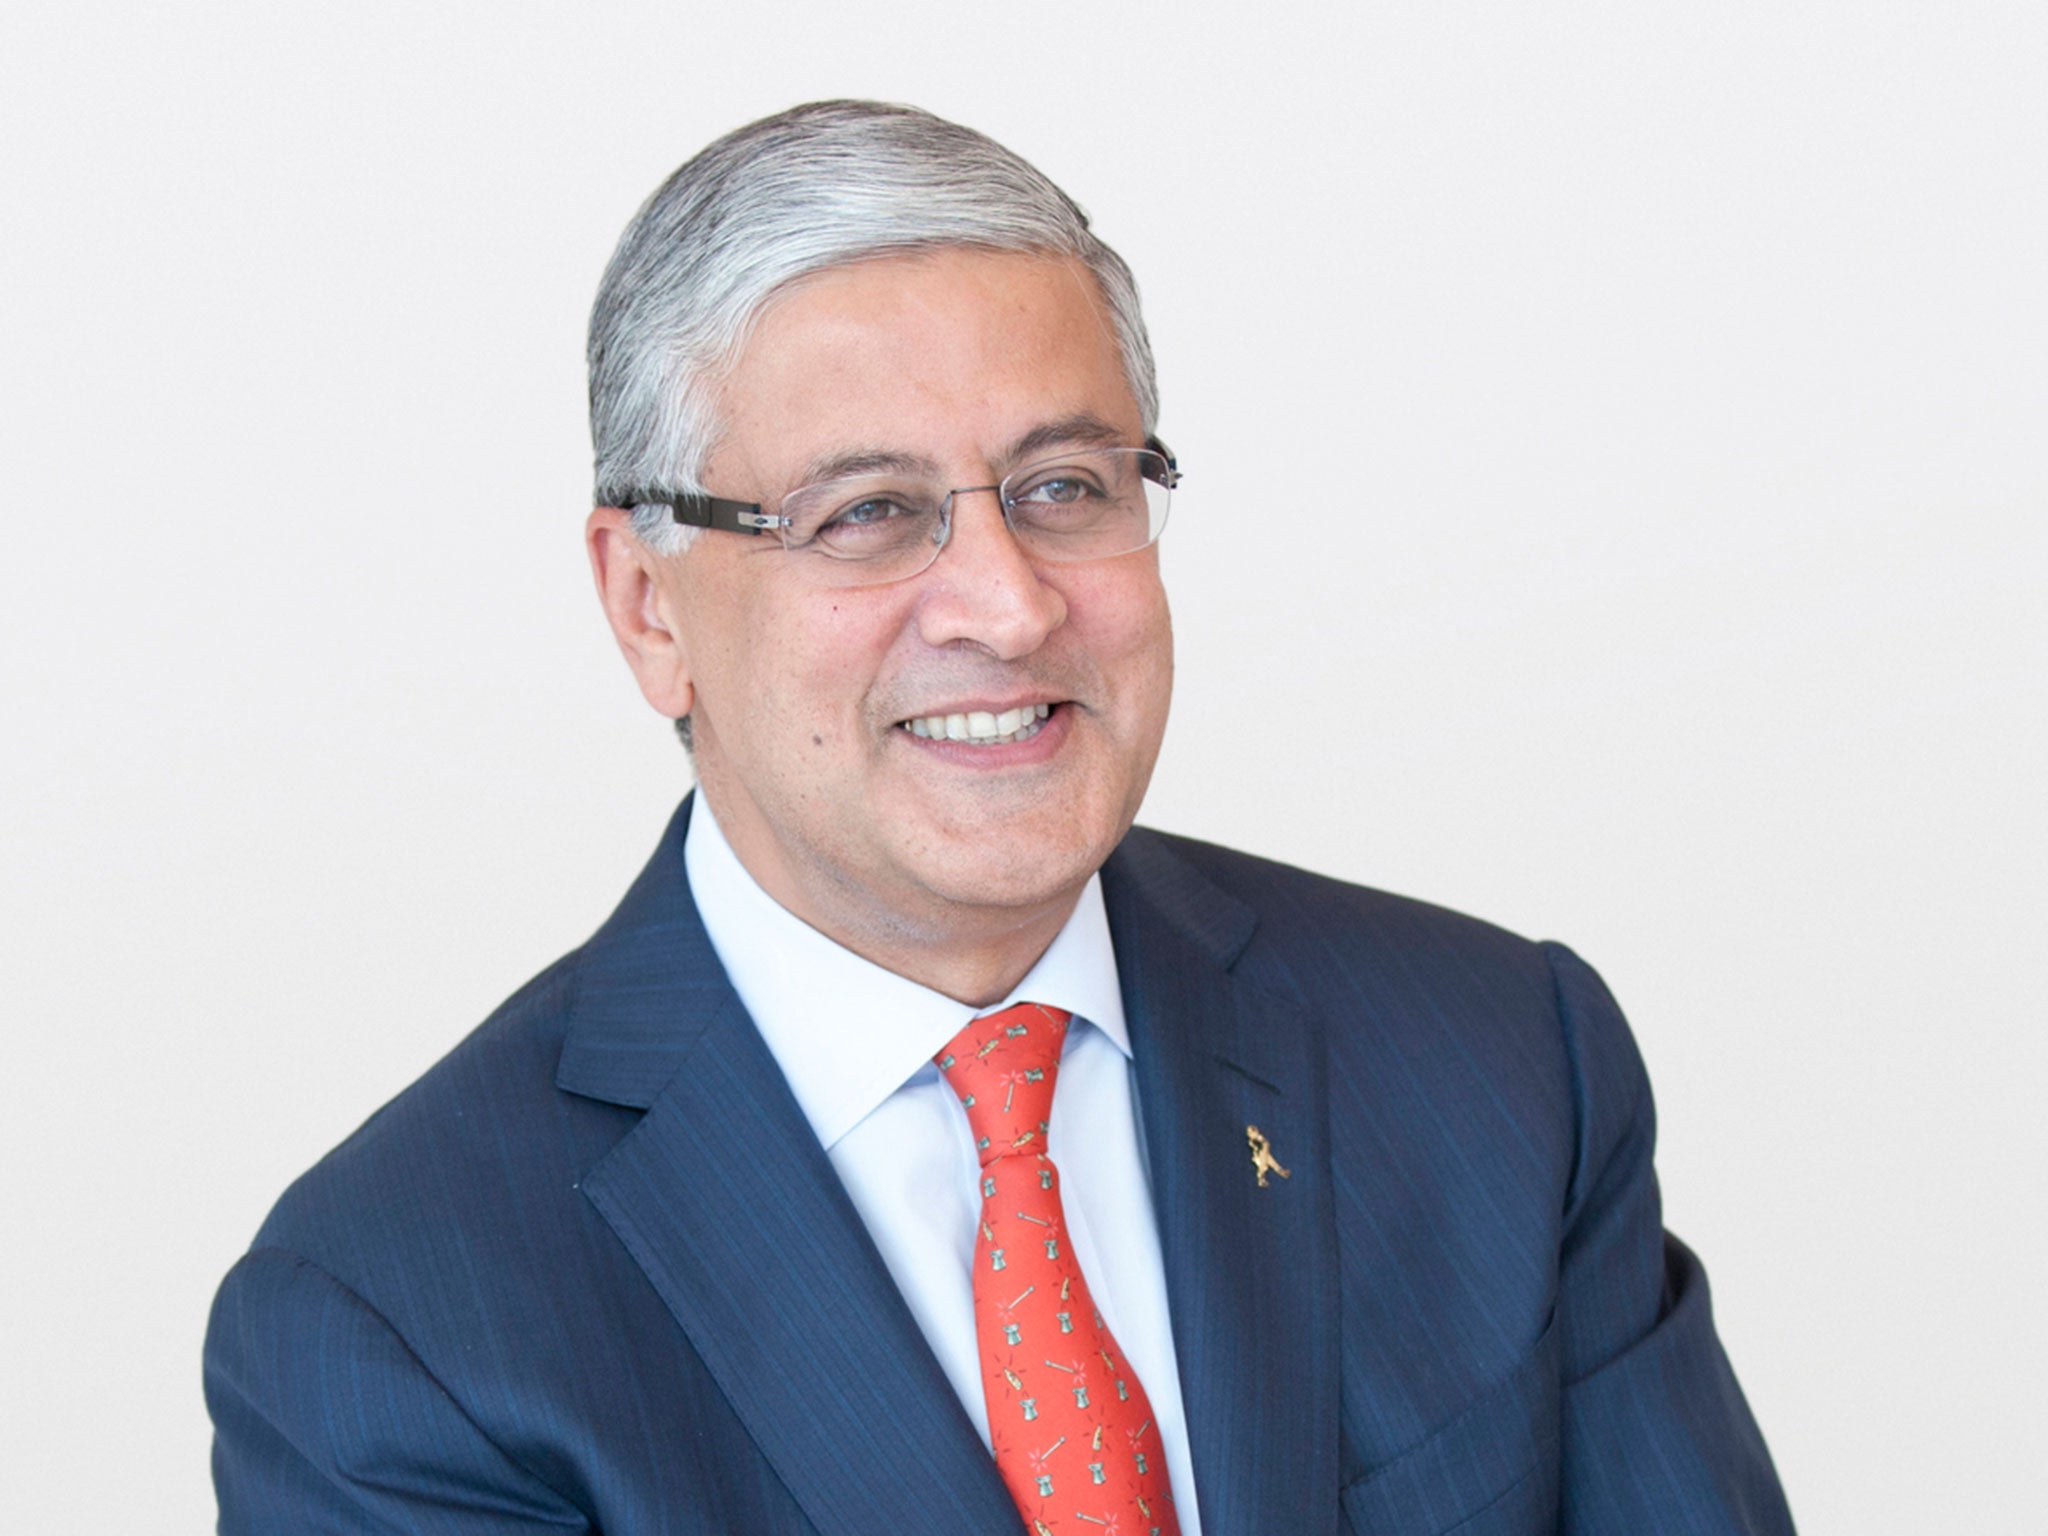 Diageo chief executive Ivan Menezes